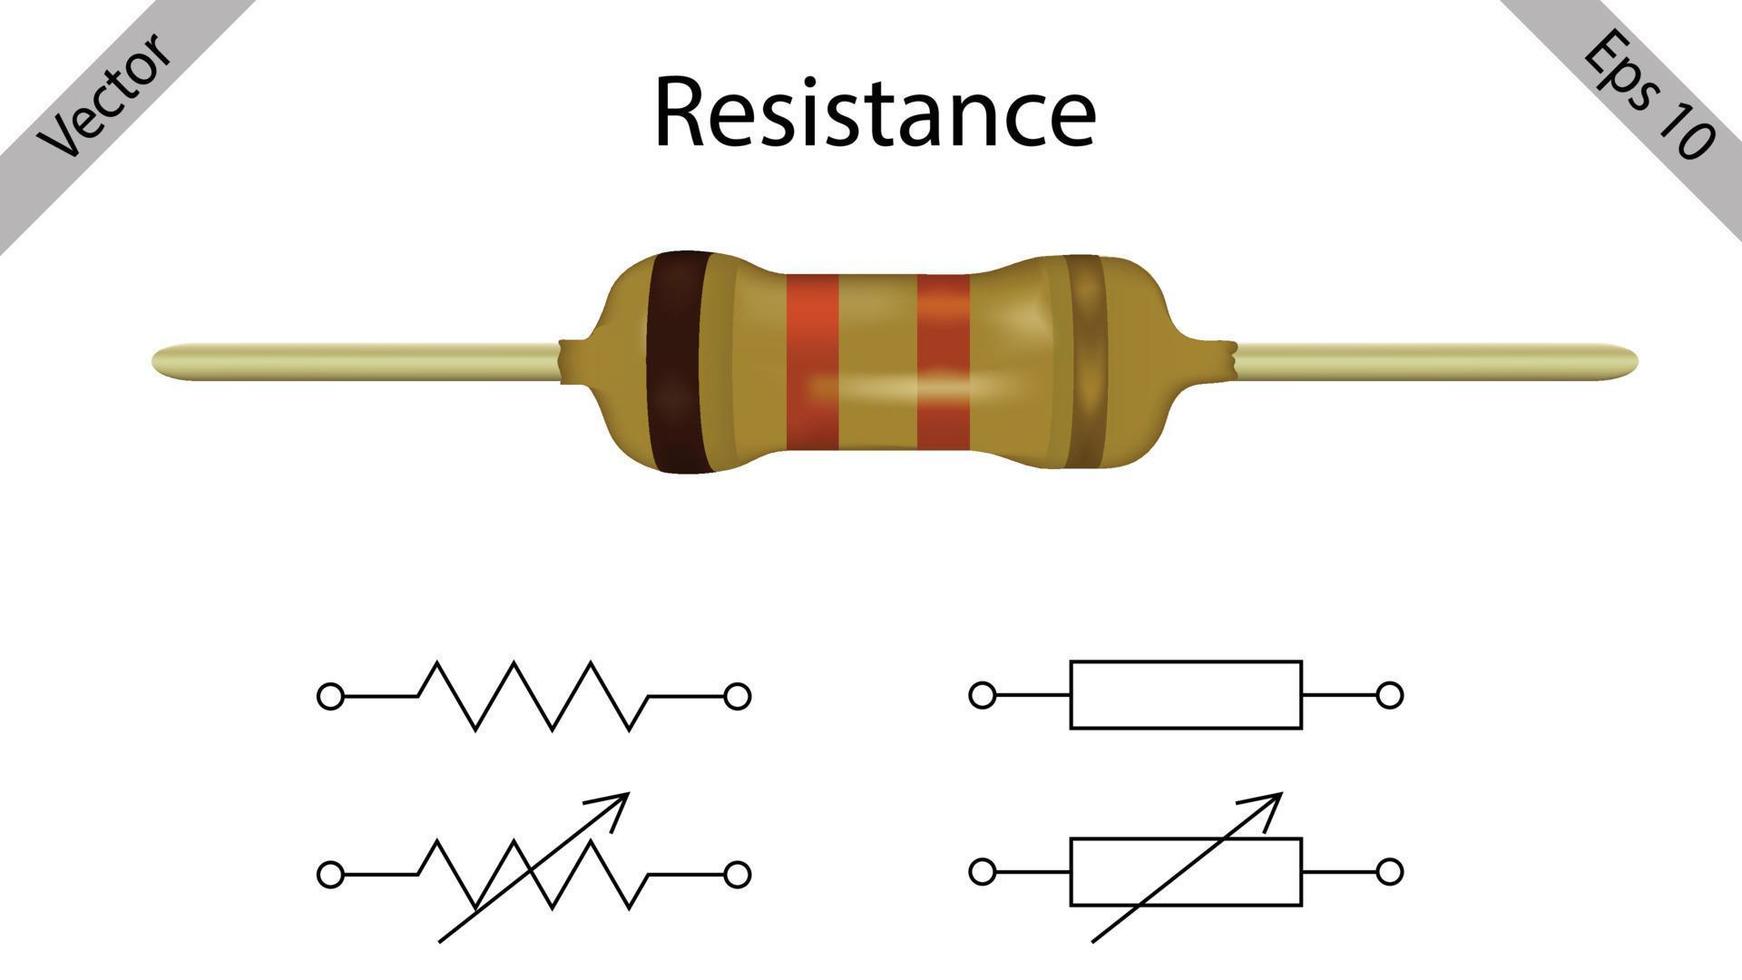 Simbología de componentes electrónicos: resistencias